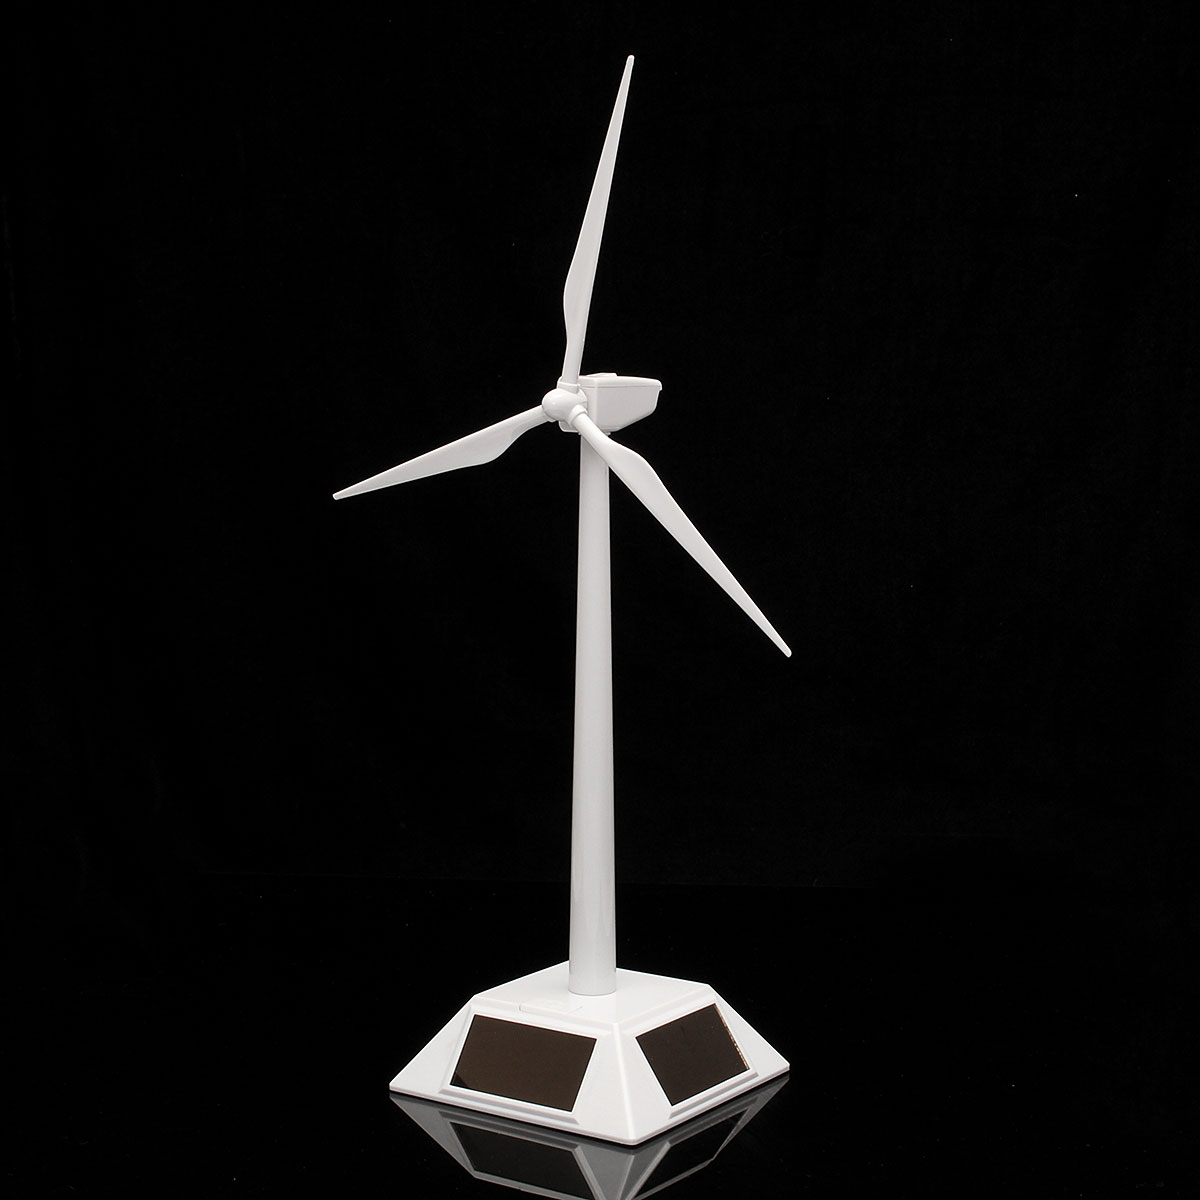 Plastic Solar Powered Windmill Wind Mill Turbine Teaching Tool & Desktop Display Tray Holder 13